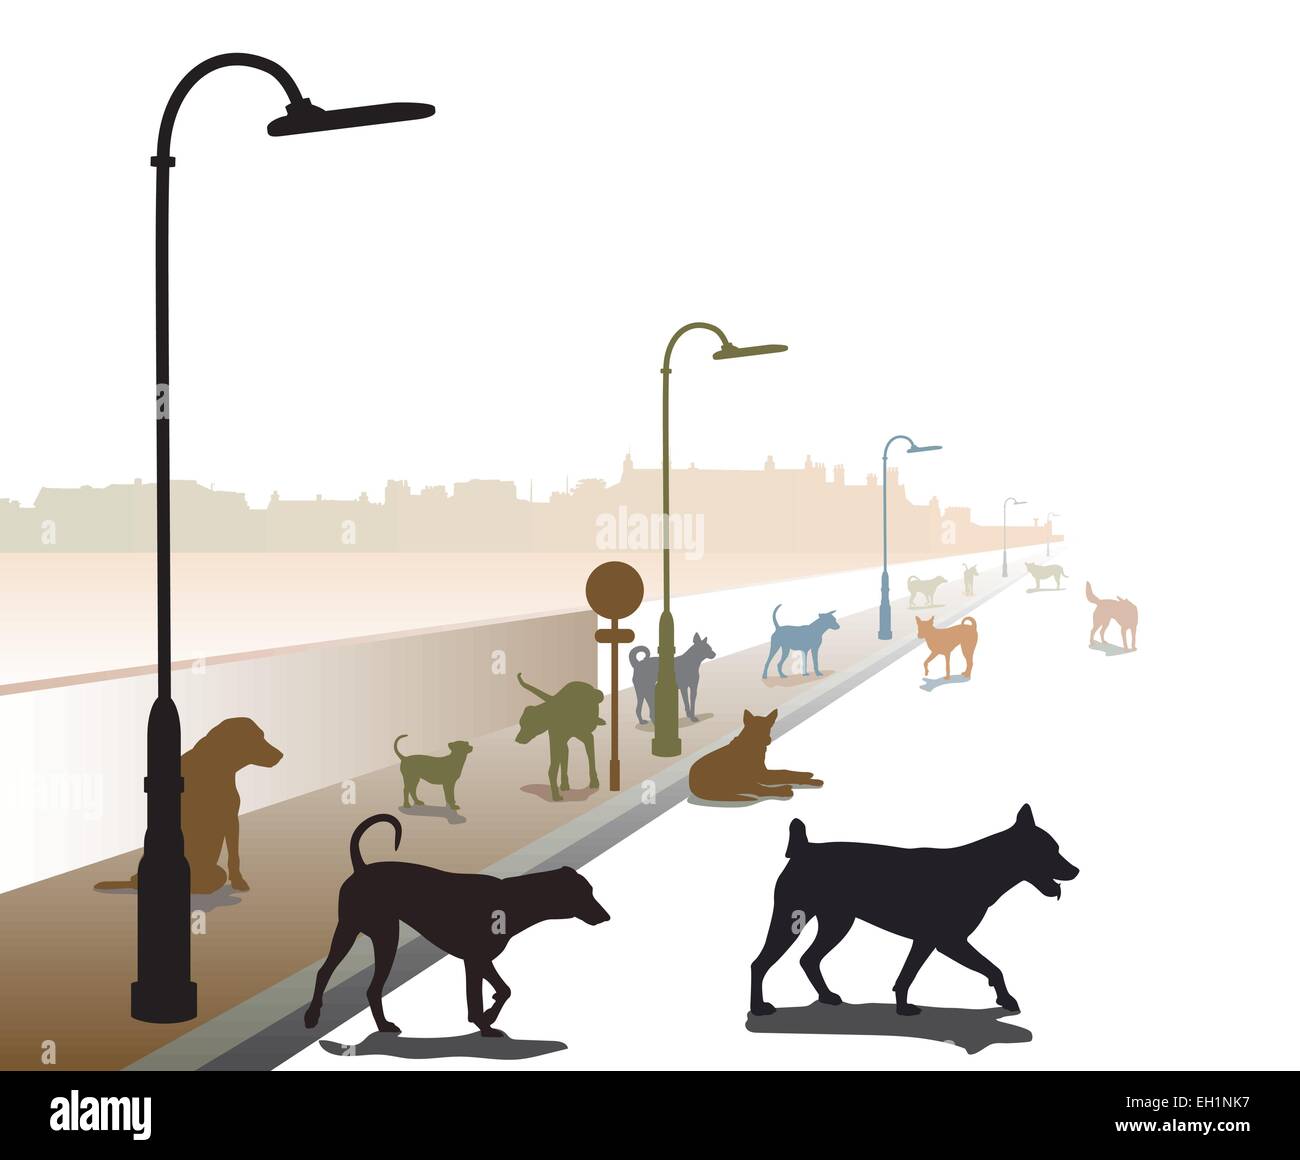 Illustration vectorielle modifiable d'un groupe disparate de chiens errants sur une route solitaire Illustration de Vecteur